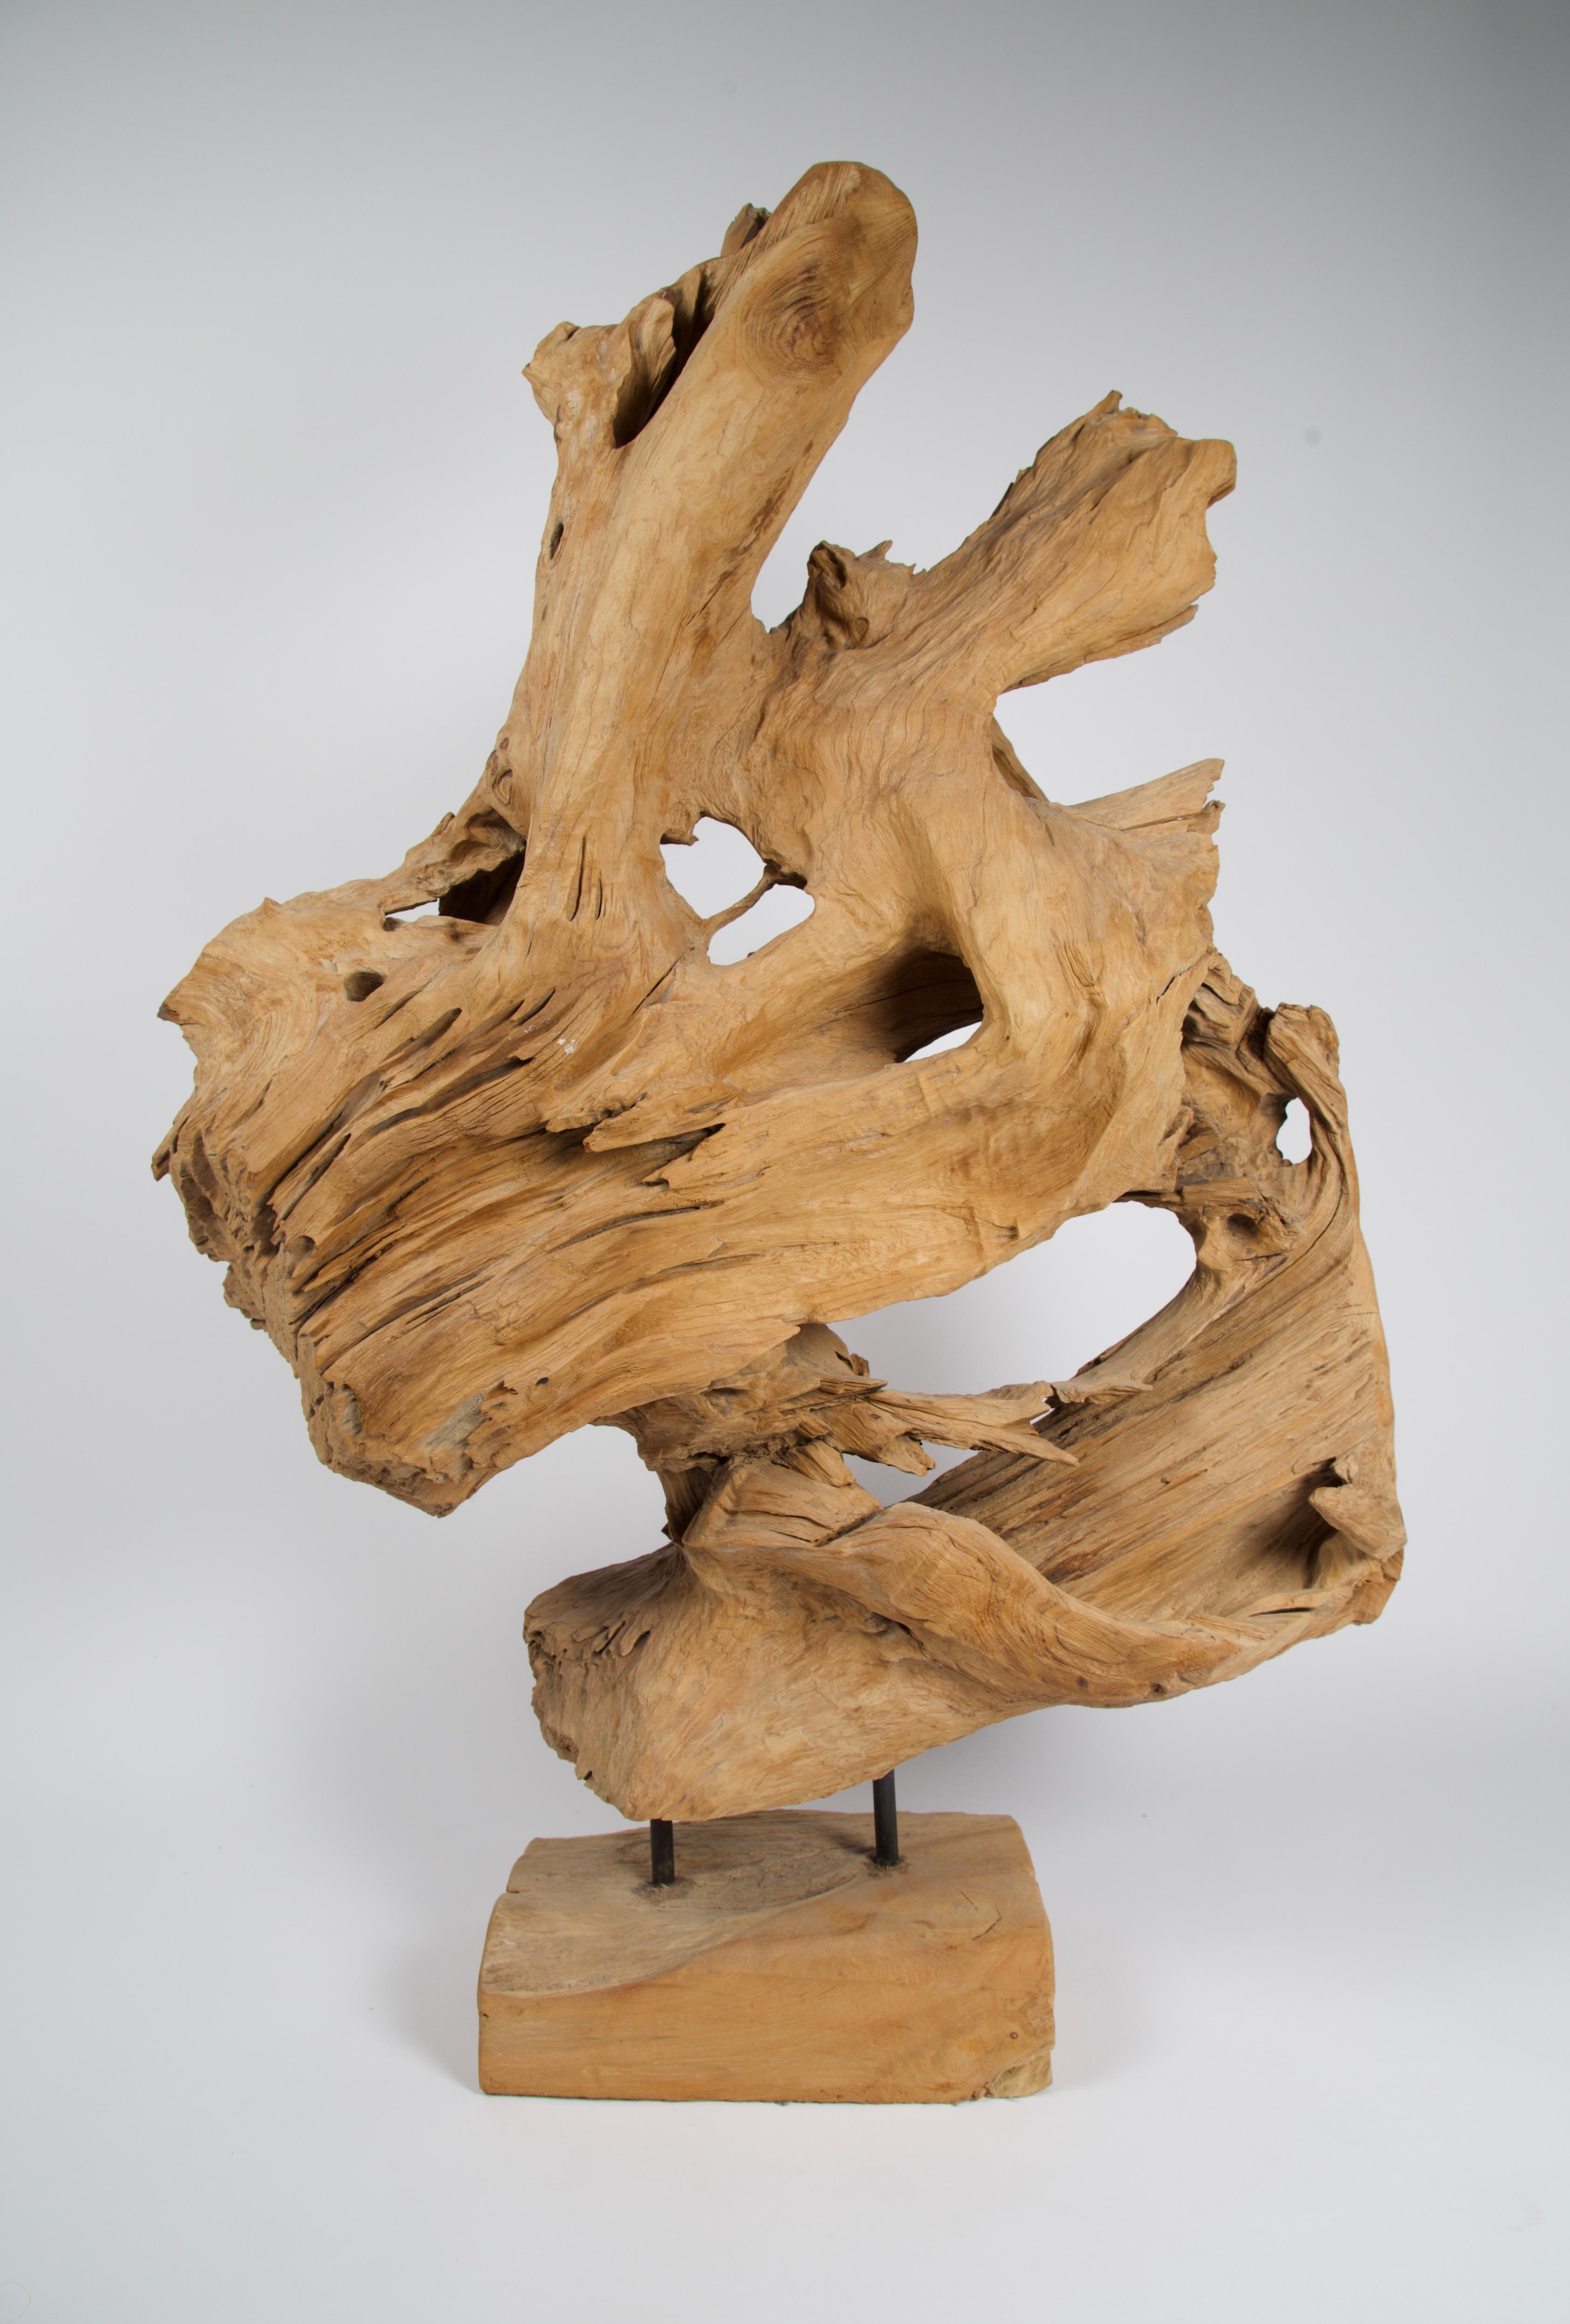 Il s'agit d'une étonnante sculpture abstraite de forme libre en bois de teck naturel et organique. Une pièce d'art très impressionnante et de grande taille. Montée sur une base en bois.